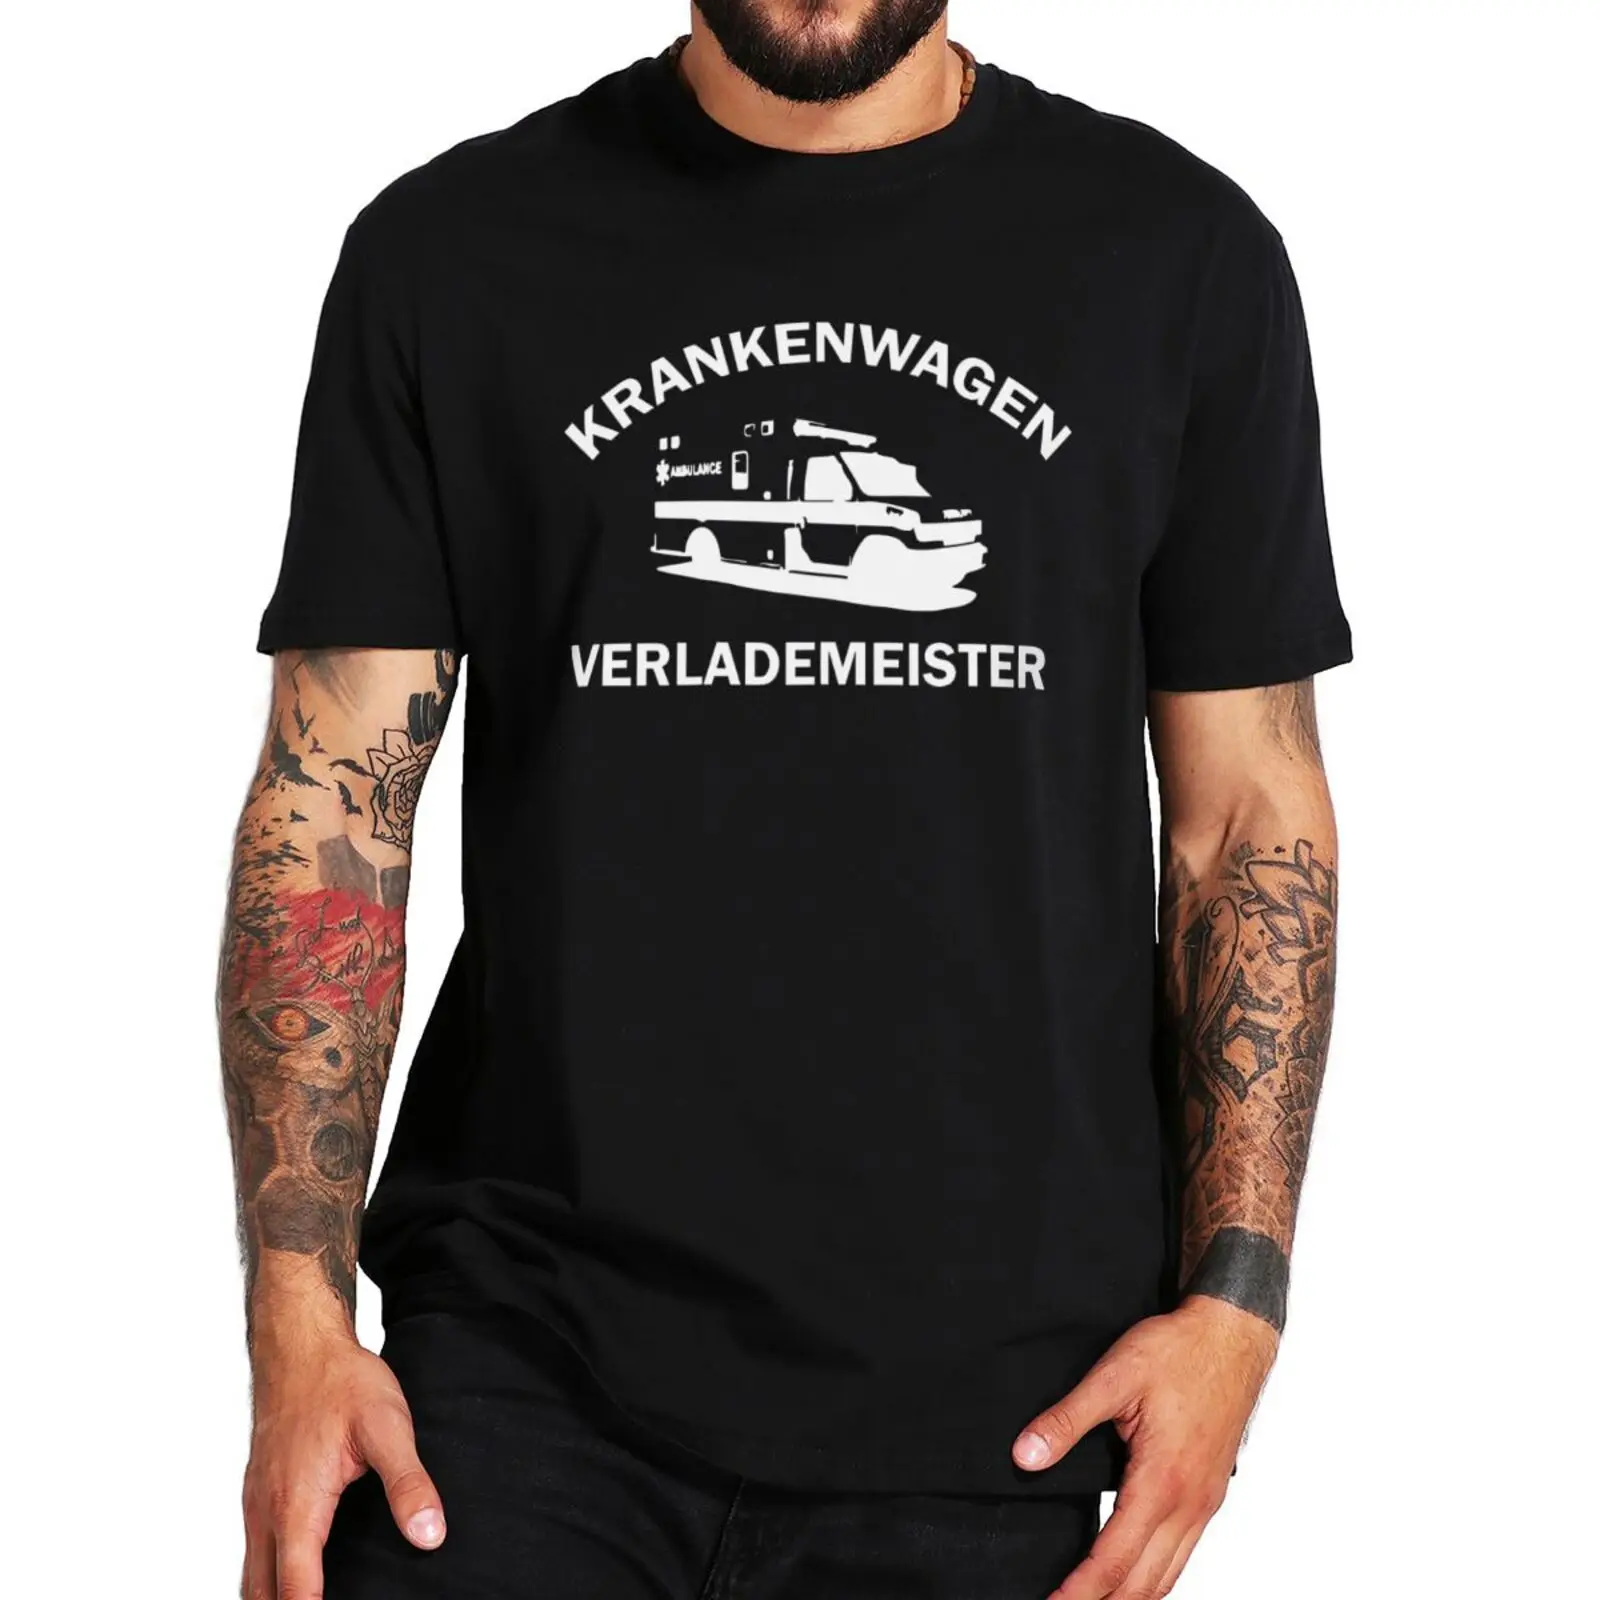 

Krankenwagen Verlademeister футболка, смешные немецкие тексты, смешной юмор, графические футболки, 100% хлопок, унисекс, o-образный вырез, европейский размер